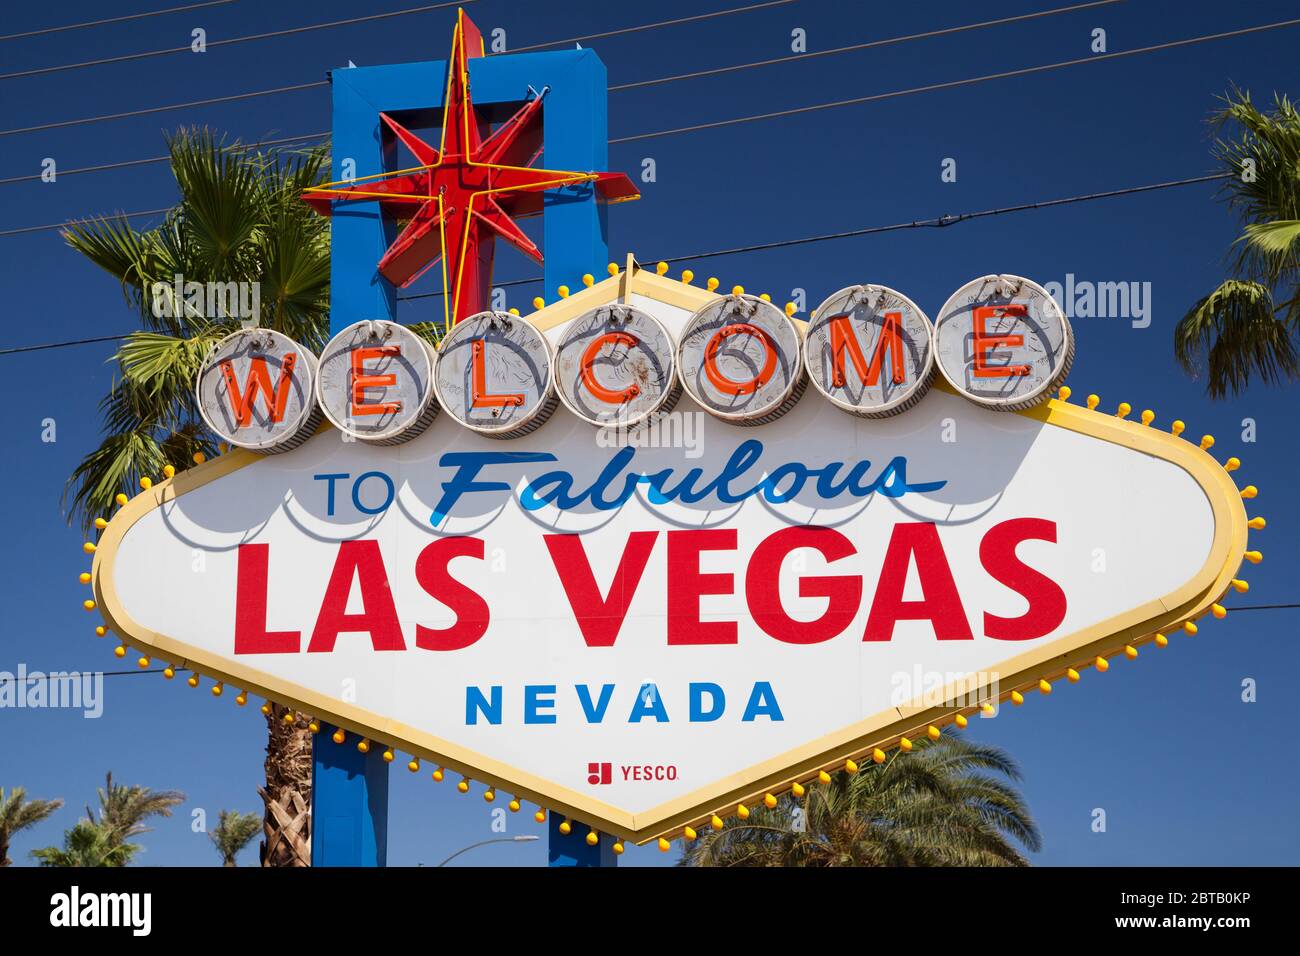 Las Vegas, Nevada - 30. August 2019: Das berühmte "Welcome to Fabulous Las Vegas" Schild in Las Vegas, Nevada, USA. Stockfoto